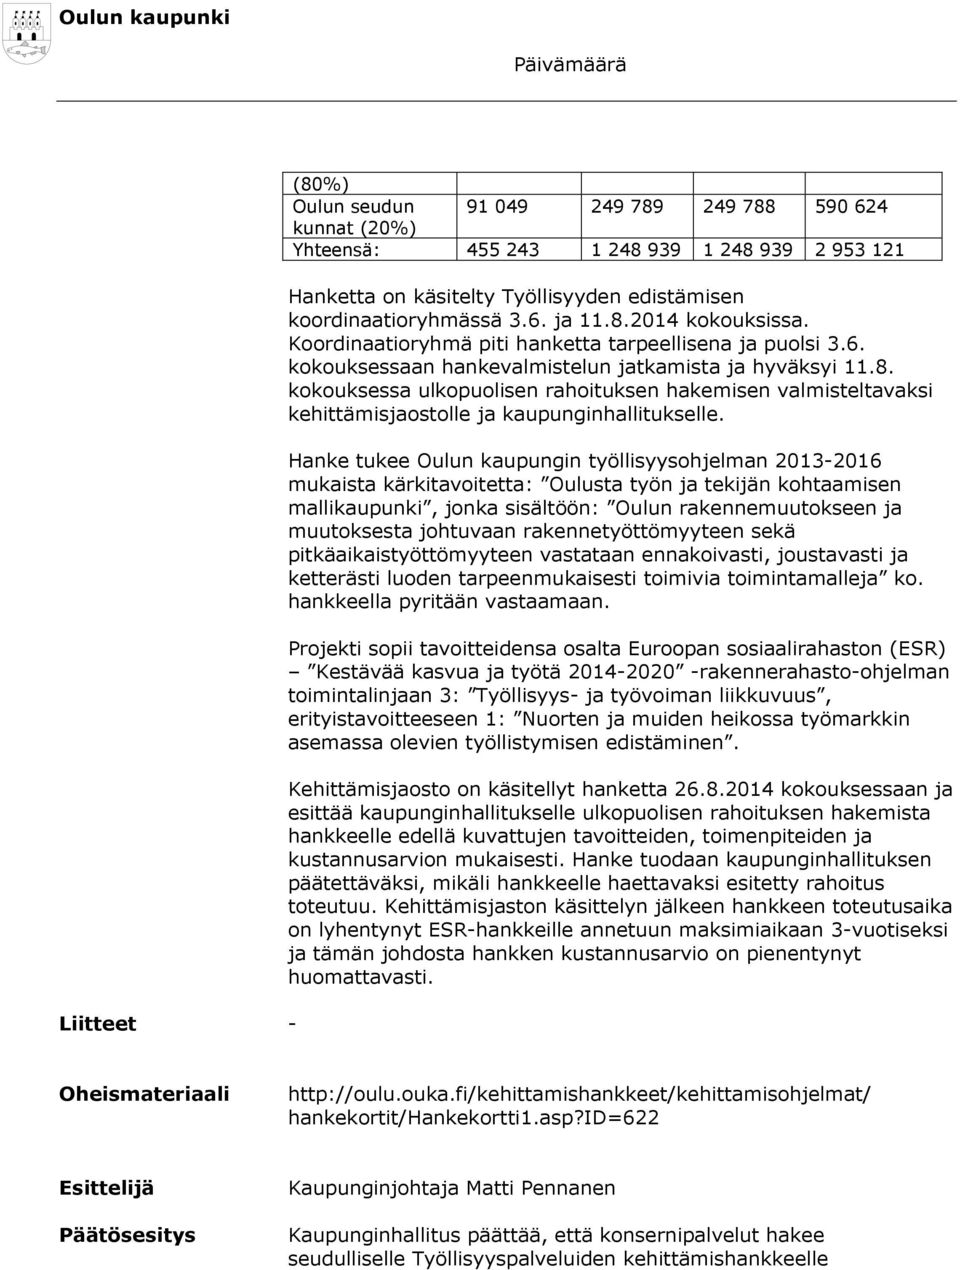 Hanke tukee Oulun kaupungin työllisyysohjelman 2013-2016 mukaista kärkitavoitetta: Oulusta työn ja tekijän kohtaamisen mallikaupunki, jonka sisältöön: Oulun rakennemuutokseen ja muutoksesta johtuvaan